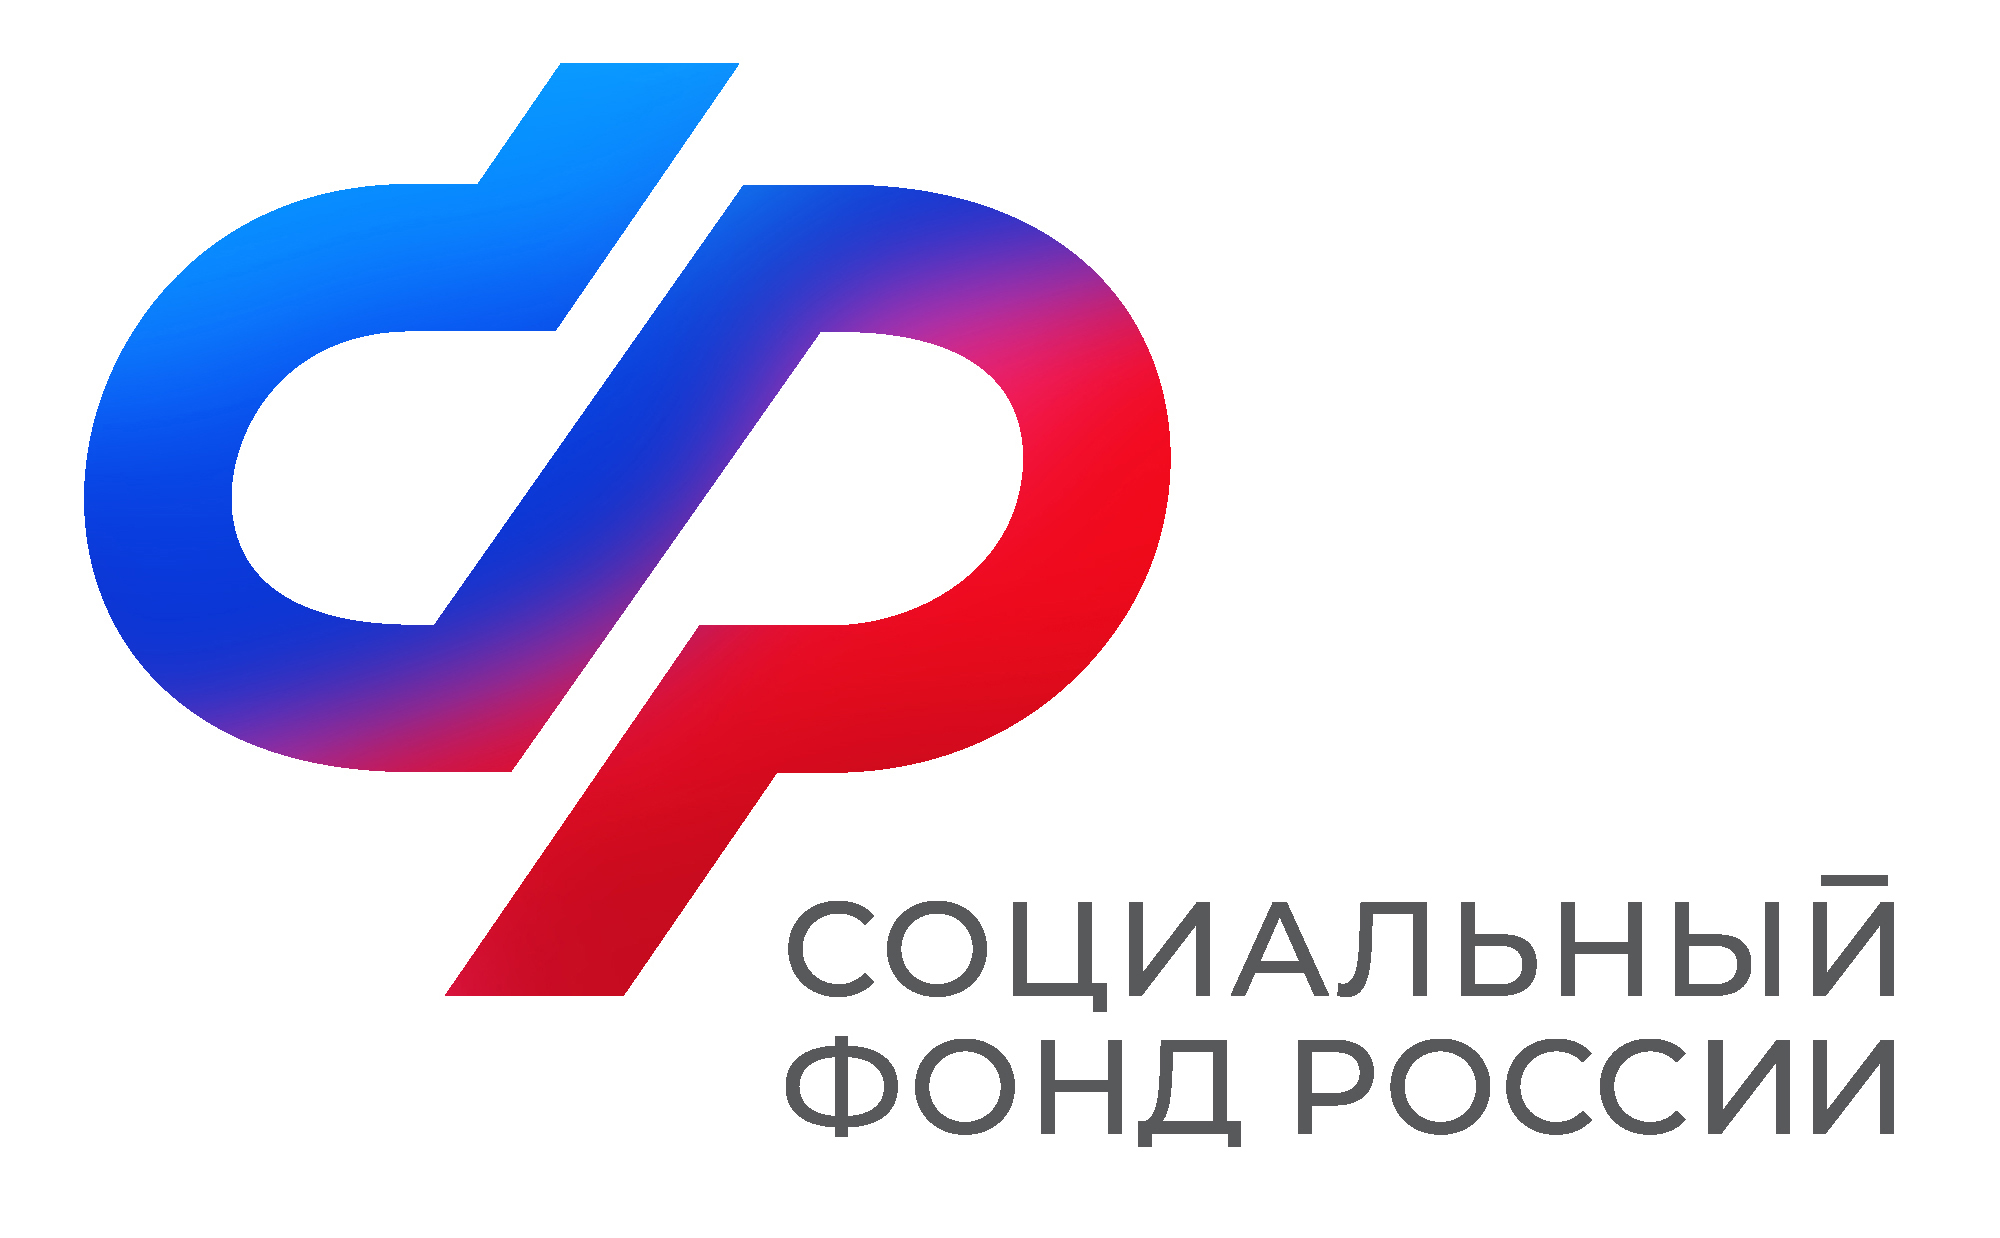 Социальный фонд в Челябинской области начинает проводить прием граждан по видеосвязи